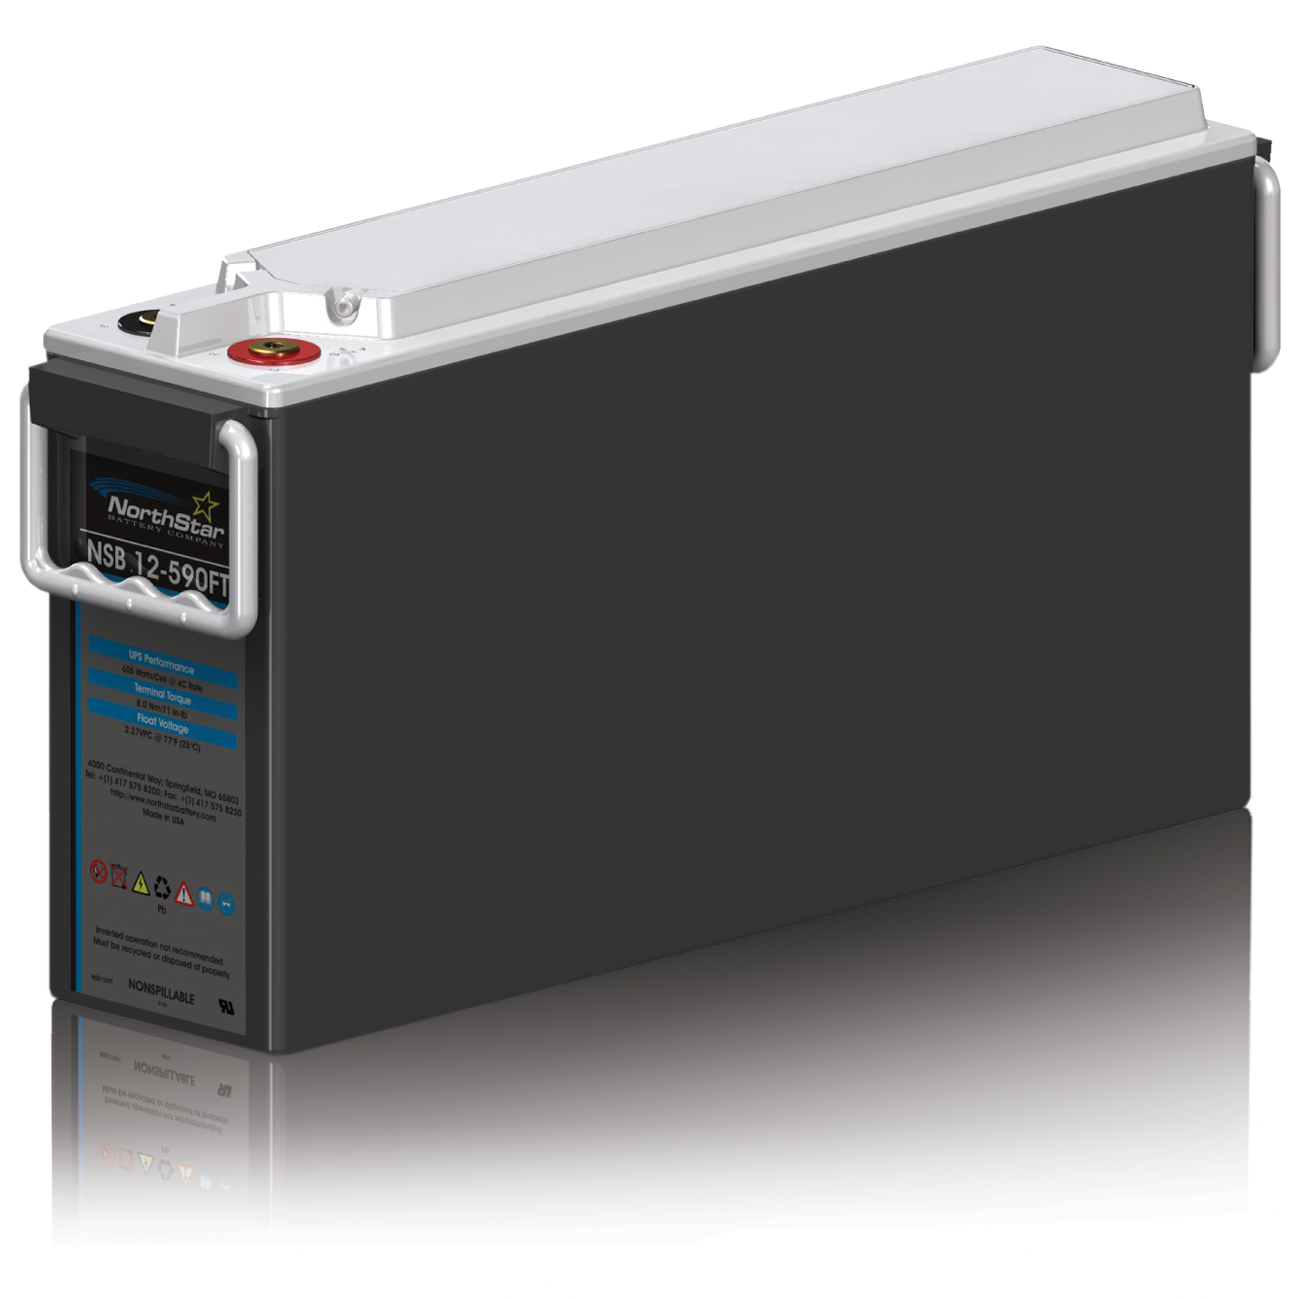 NORTHSTAR UPS Battery Model: NSB 12-590FT